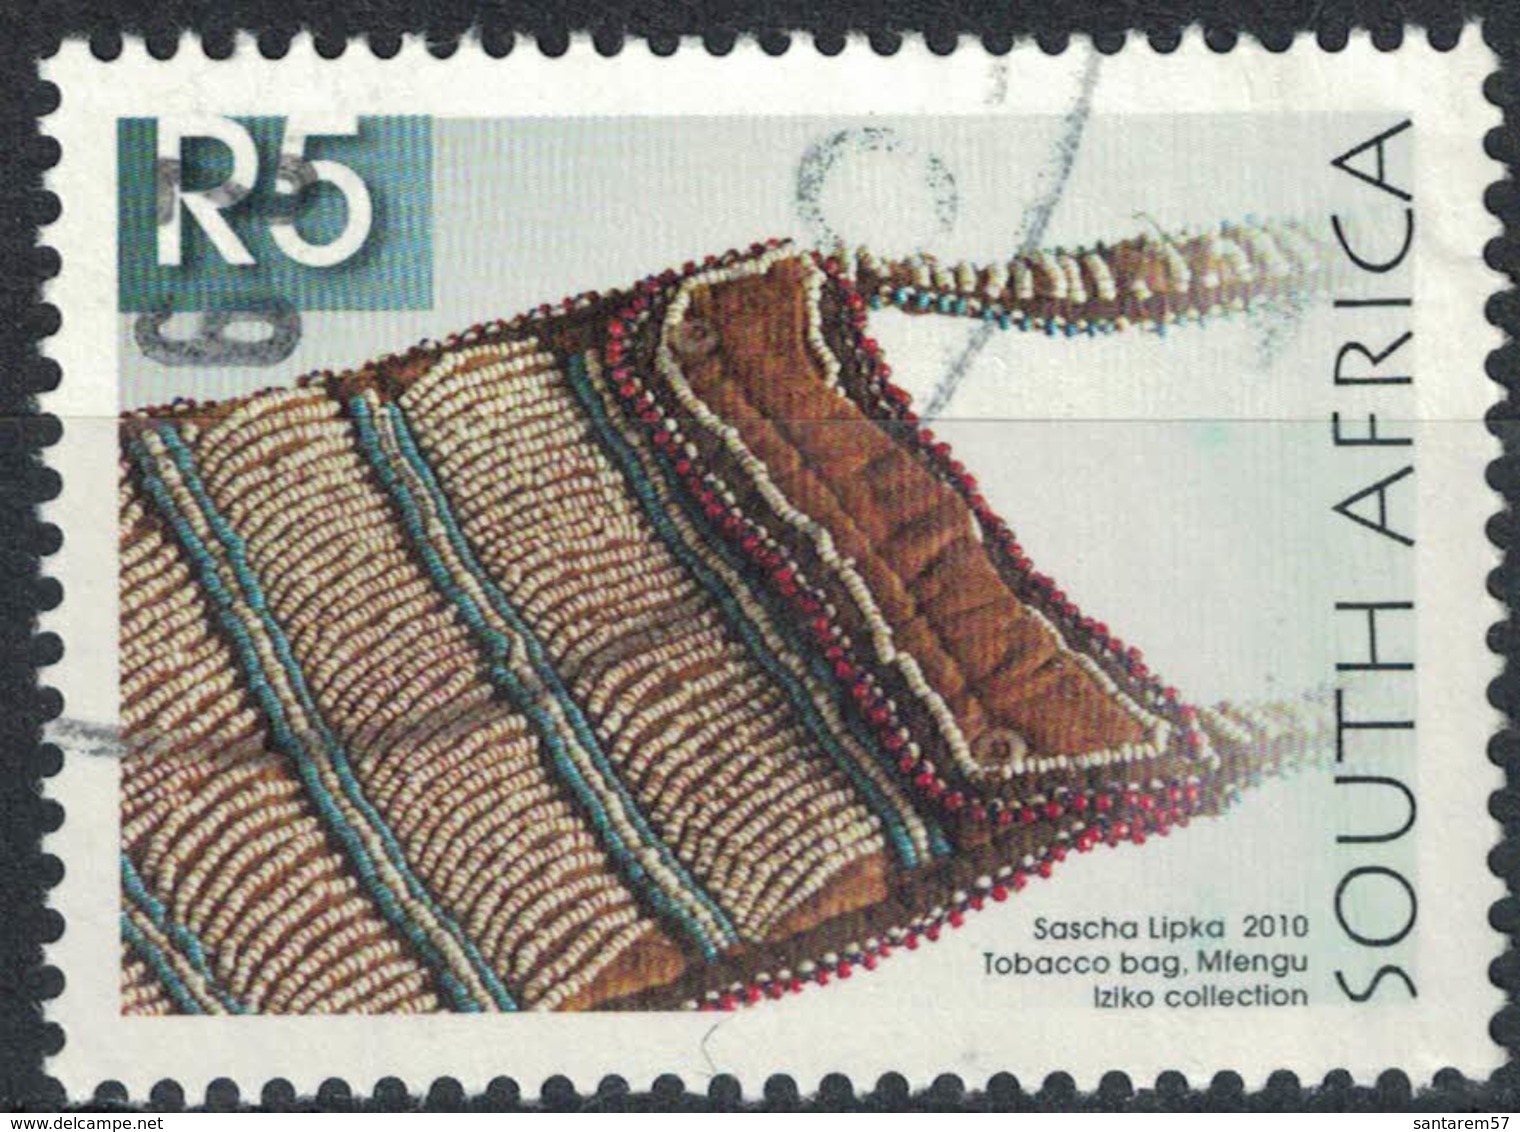 Afrique Du Sud 2010 Oblitération Ronde Used Stamp Sascha Lipka Sac à Tabac Tobacco Bag - Oblitérés